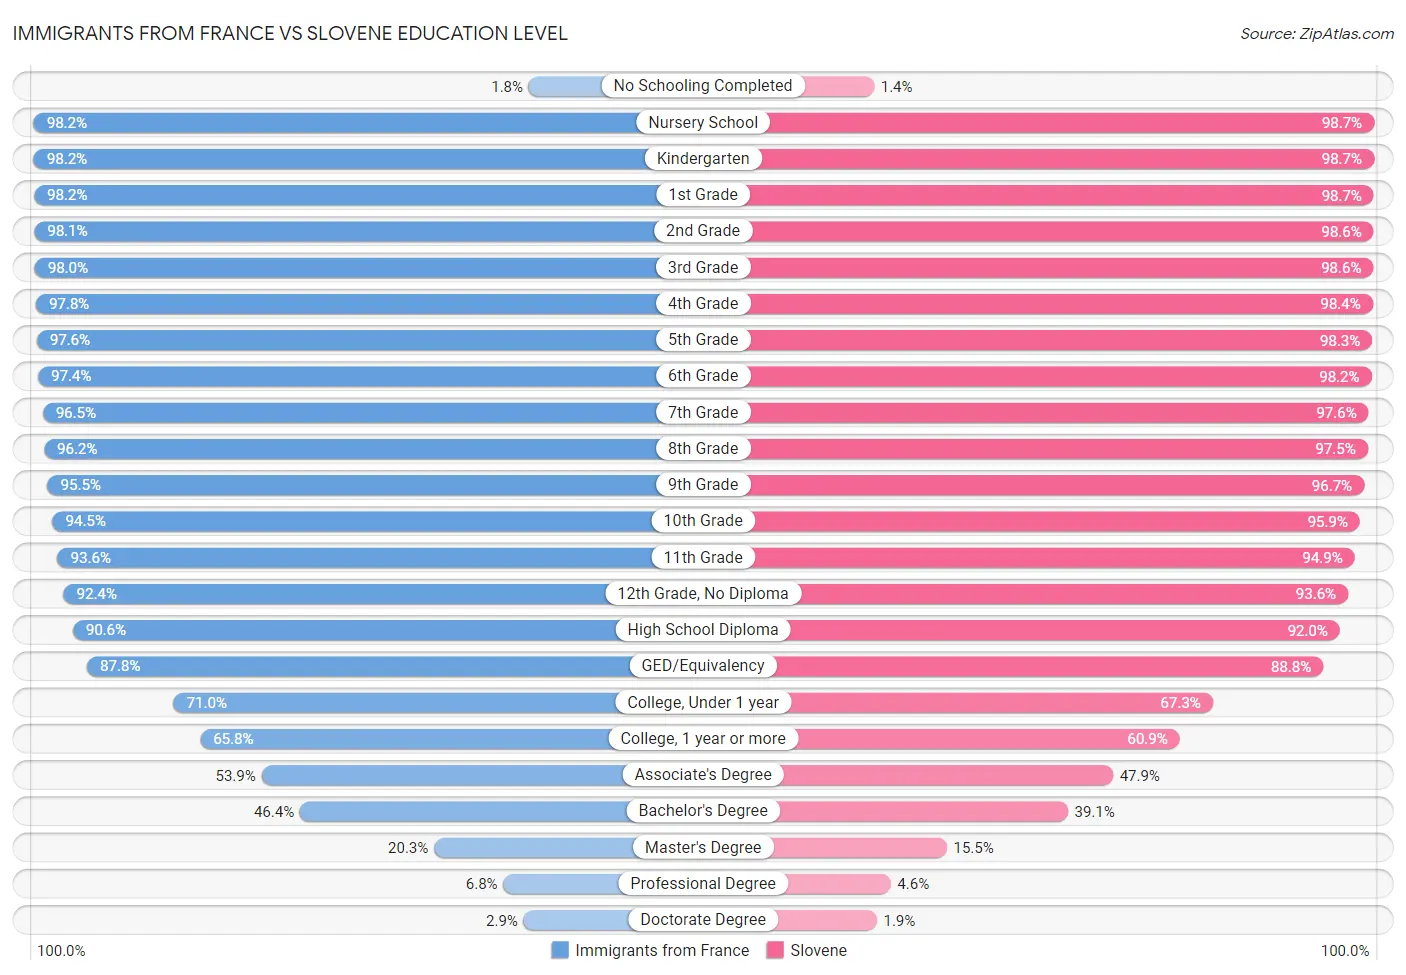 Immigrants from France vs Slovene Education Level